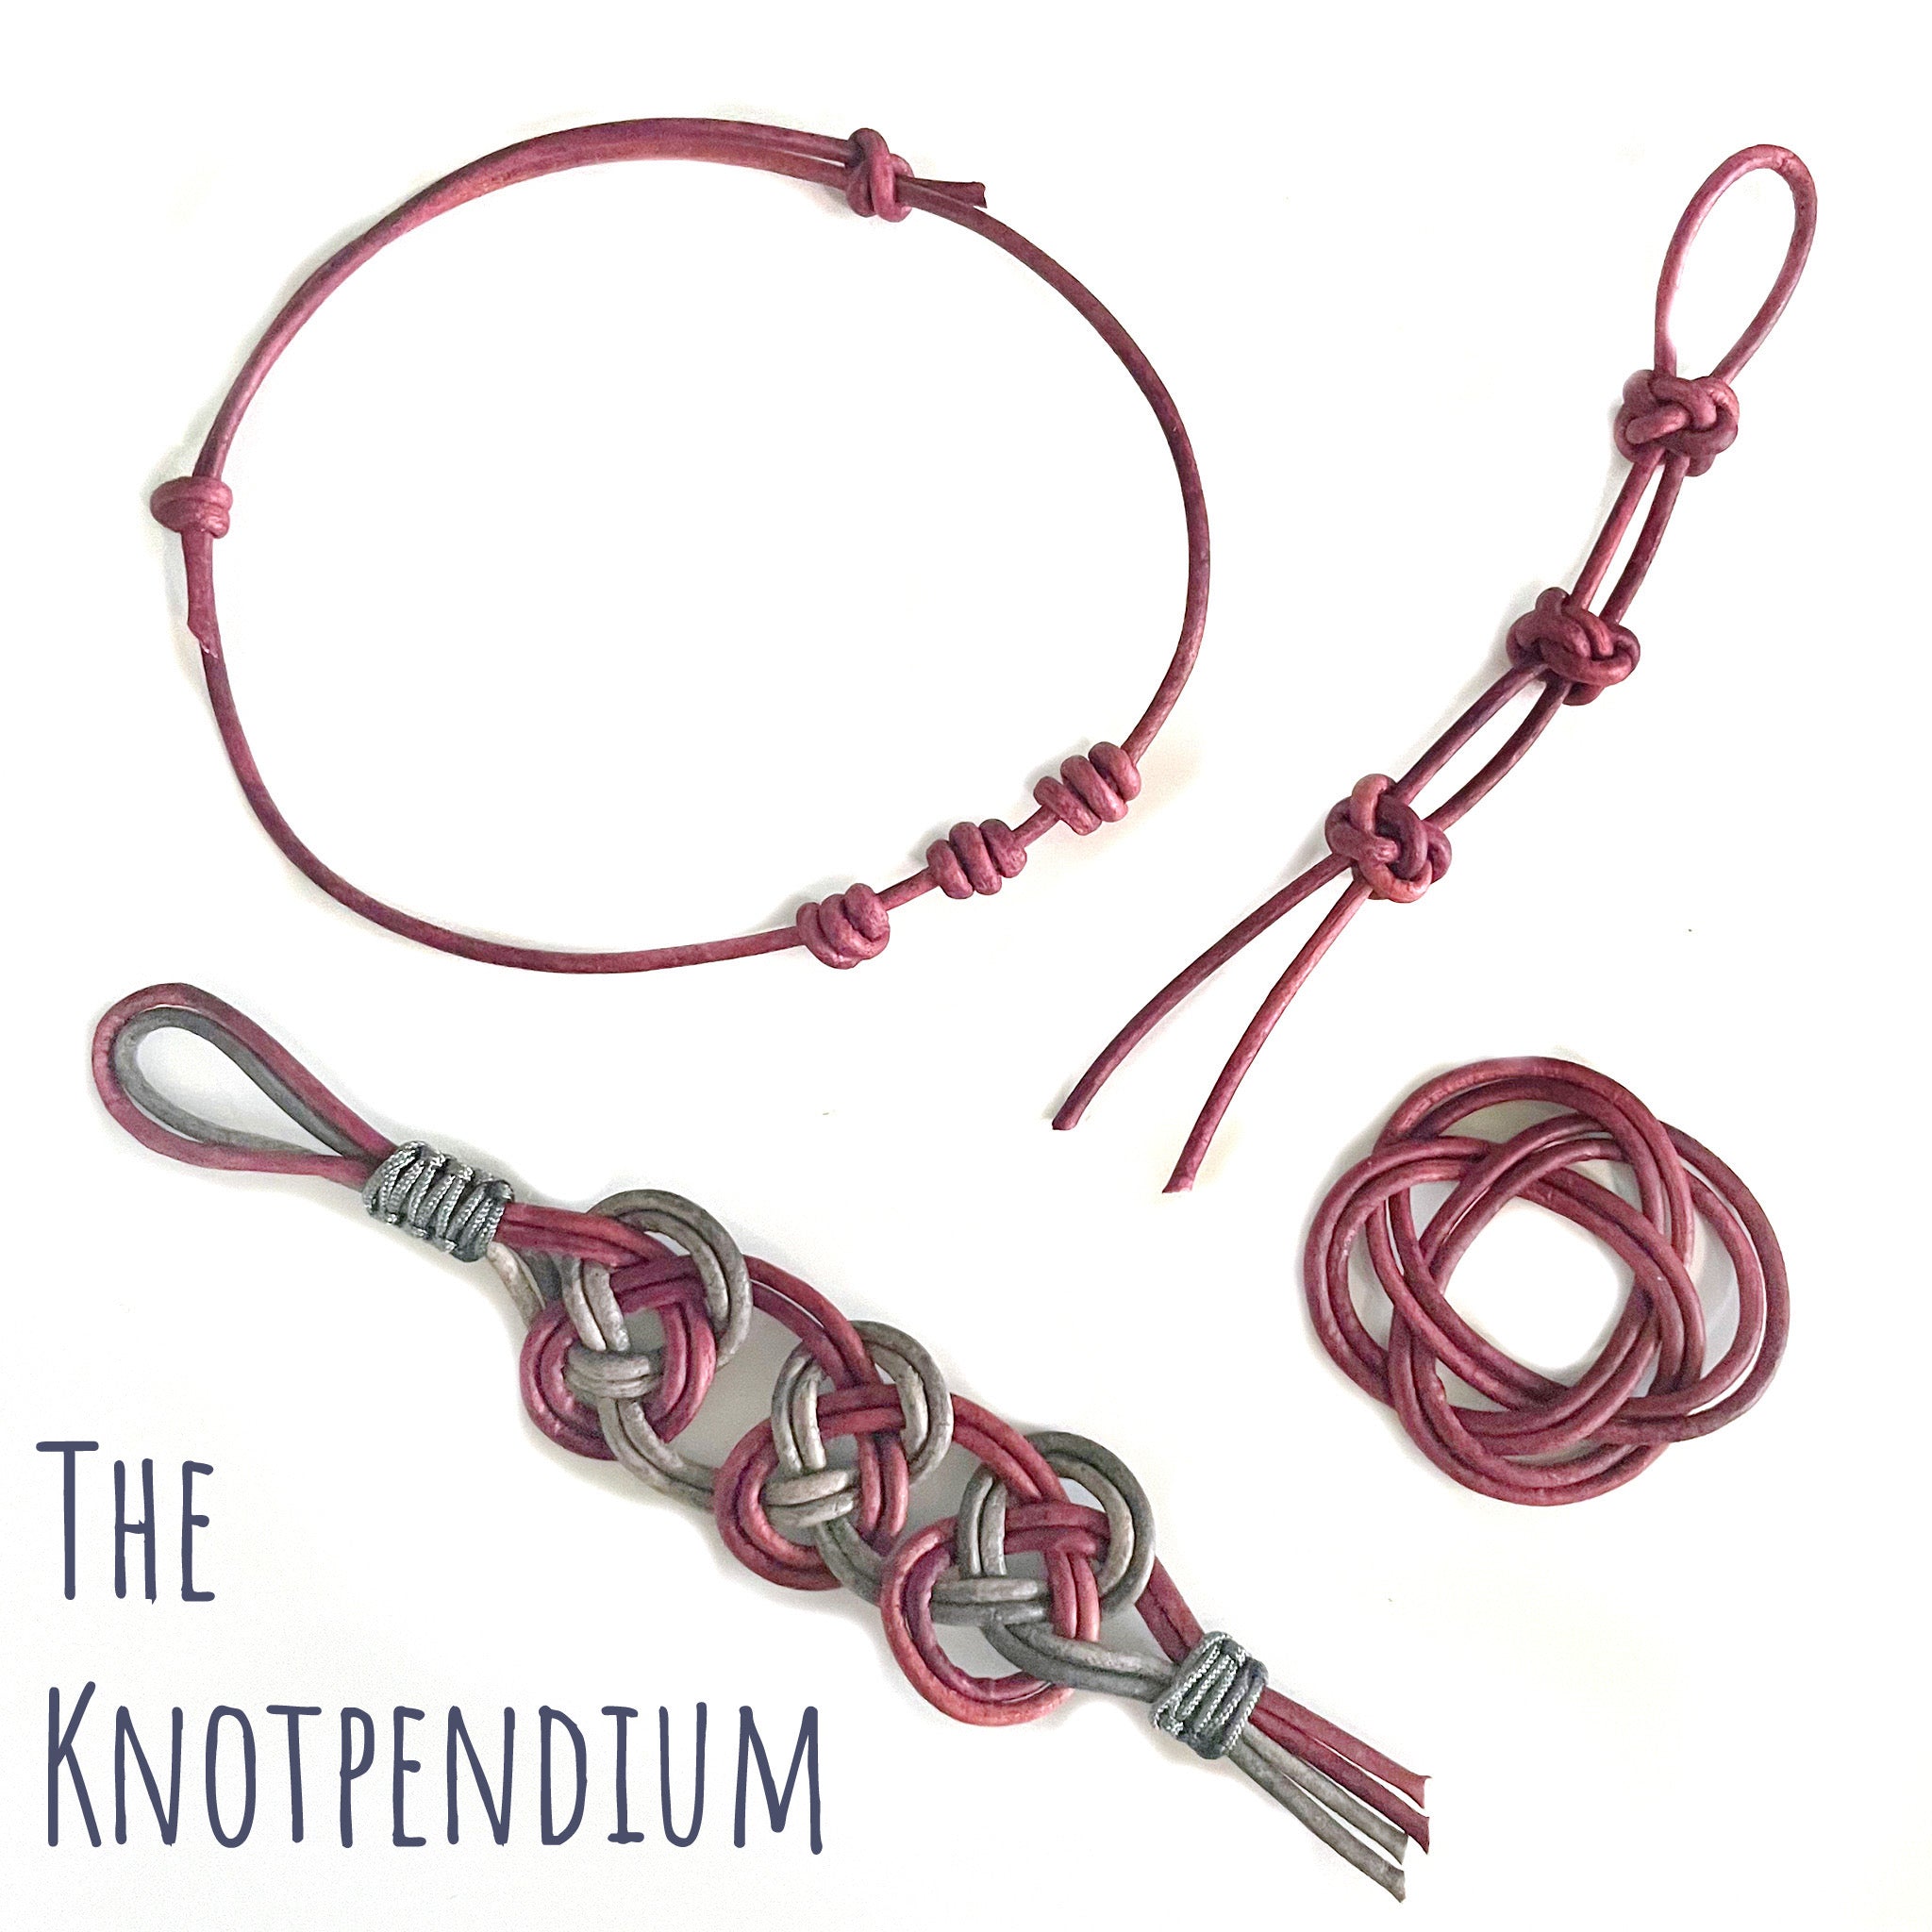 The Knotpendium